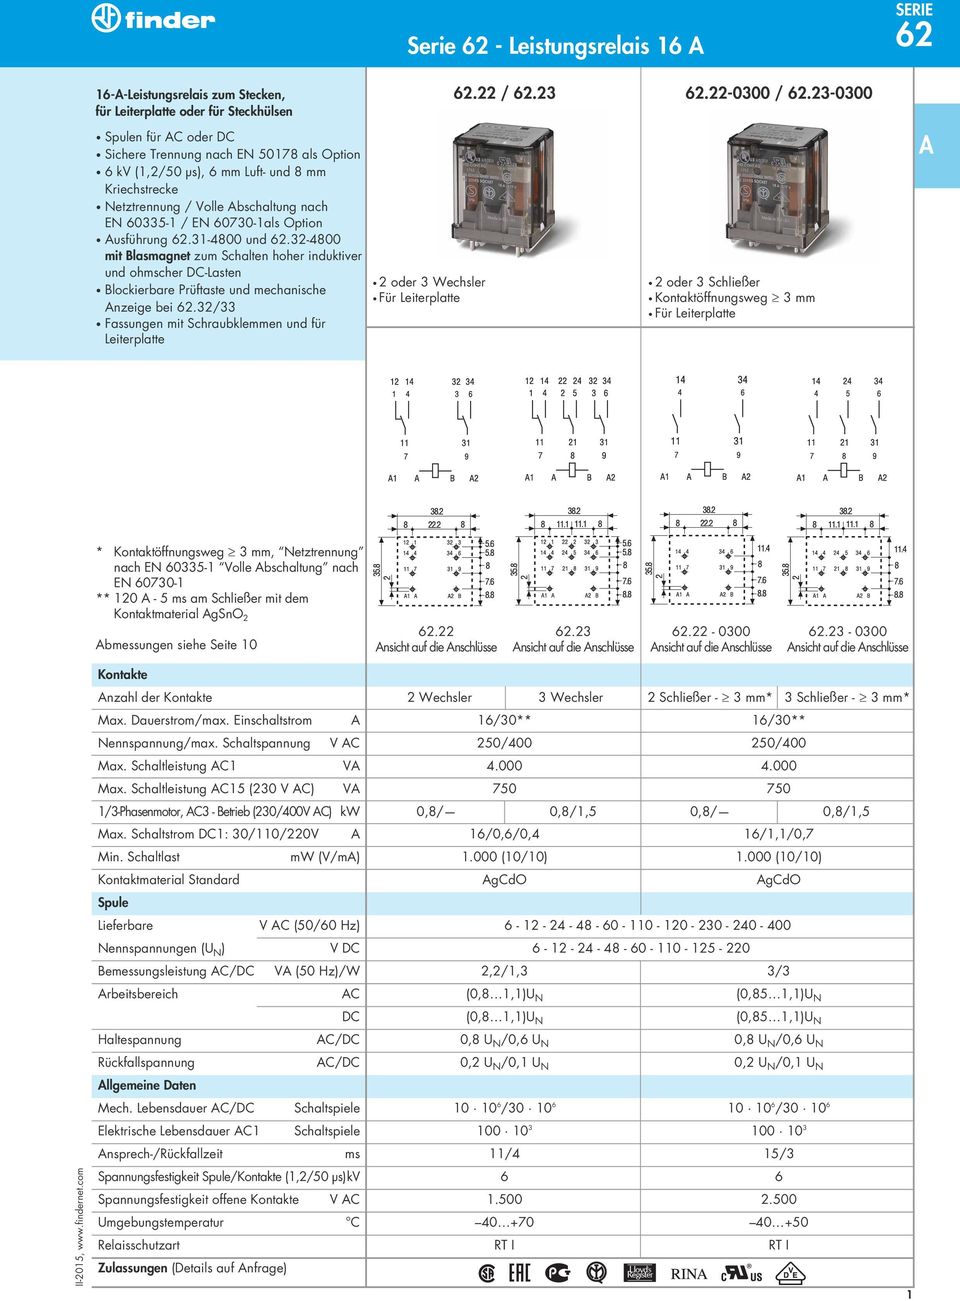 32-4800 mit Blasmagnet zum Schalten hoher induktiver und ohmscher DC-Lasten Blockierbare Prüftaste und mechanische nzeige bei 62.